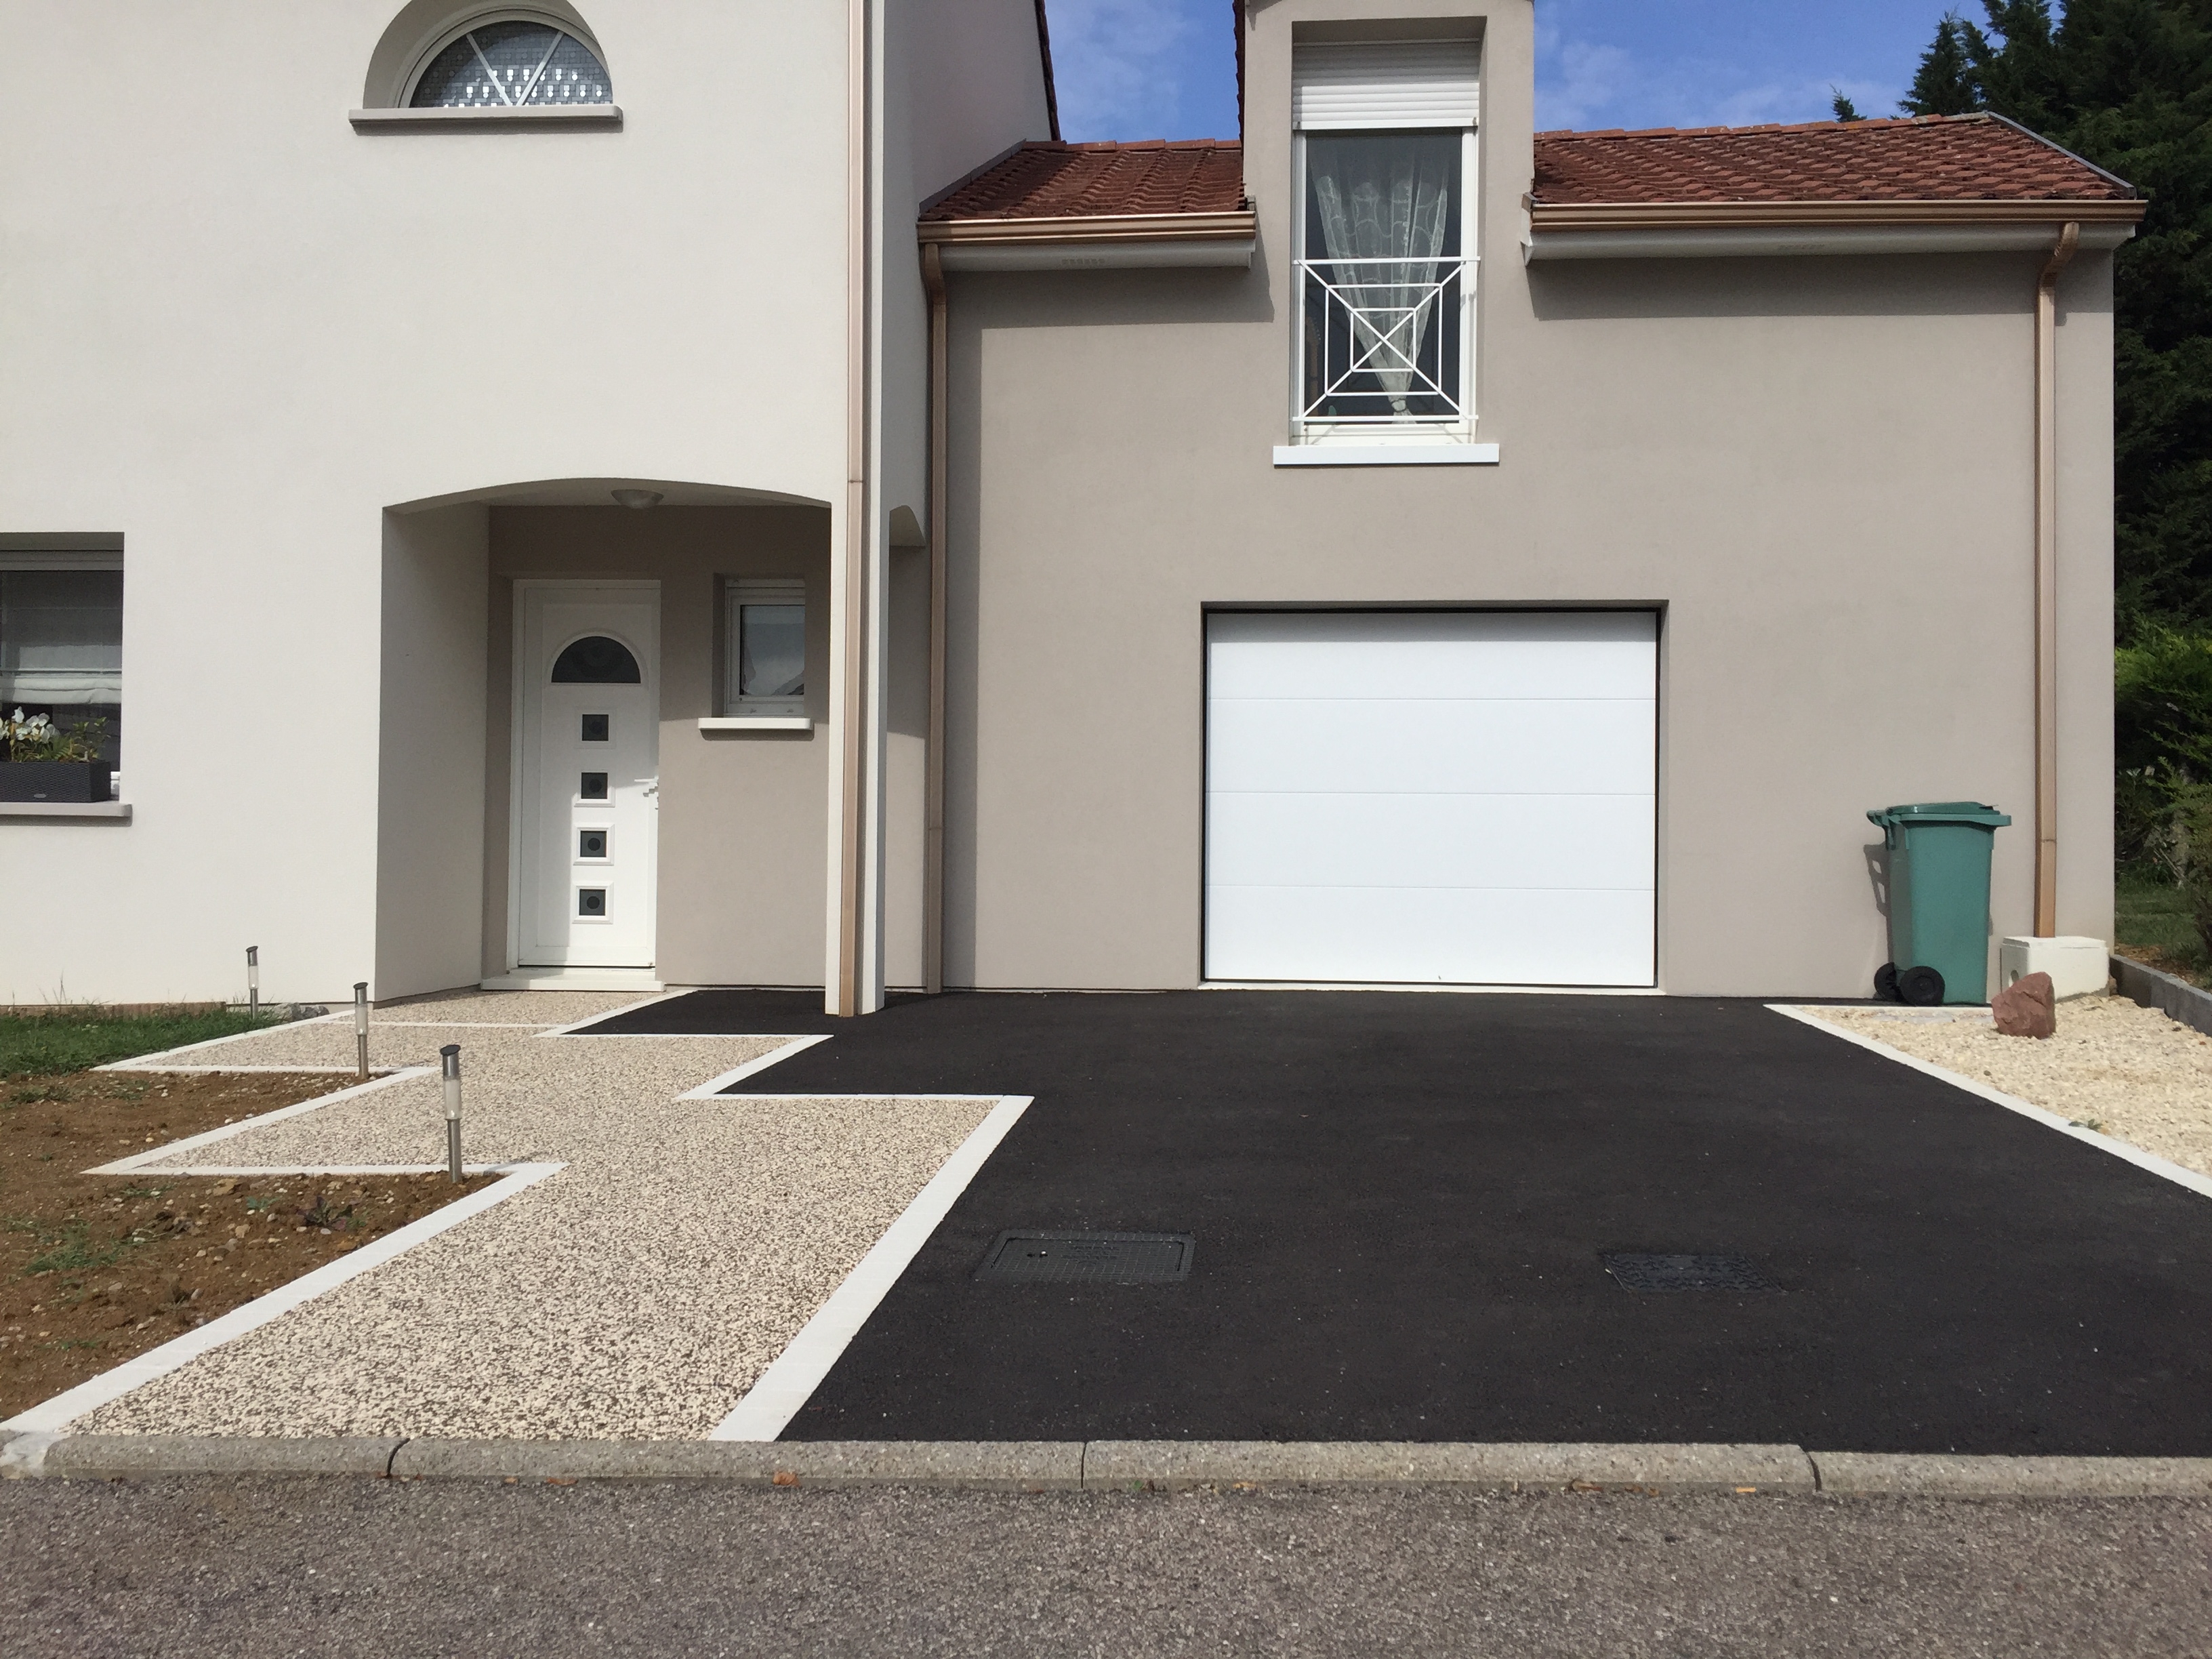 Ralisation Alle de garage en Enrob noir  Chaud, Hydrostar et Pav La Couture - Meurthe-et-Moselle conue le 15/05/2019